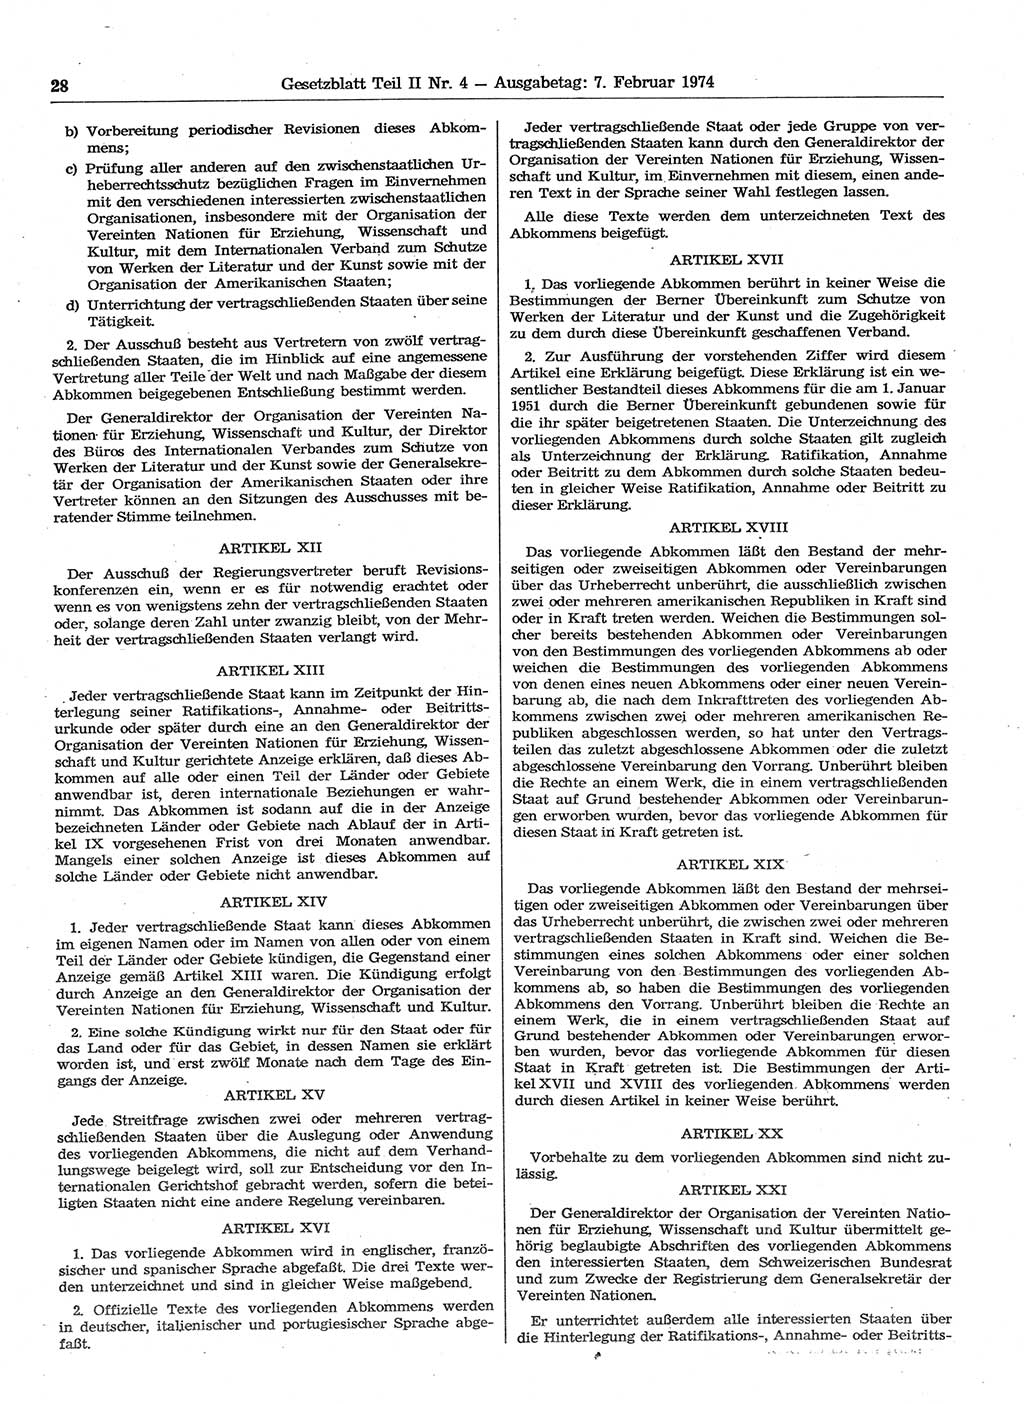 Gesetzblatt (GBl.) der Deutschen Demokratischen Republik (DDR) Teil ⅠⅠ 1974, Seite 28 (GBl. DDR ⅠⅠ 1974, S. 28)